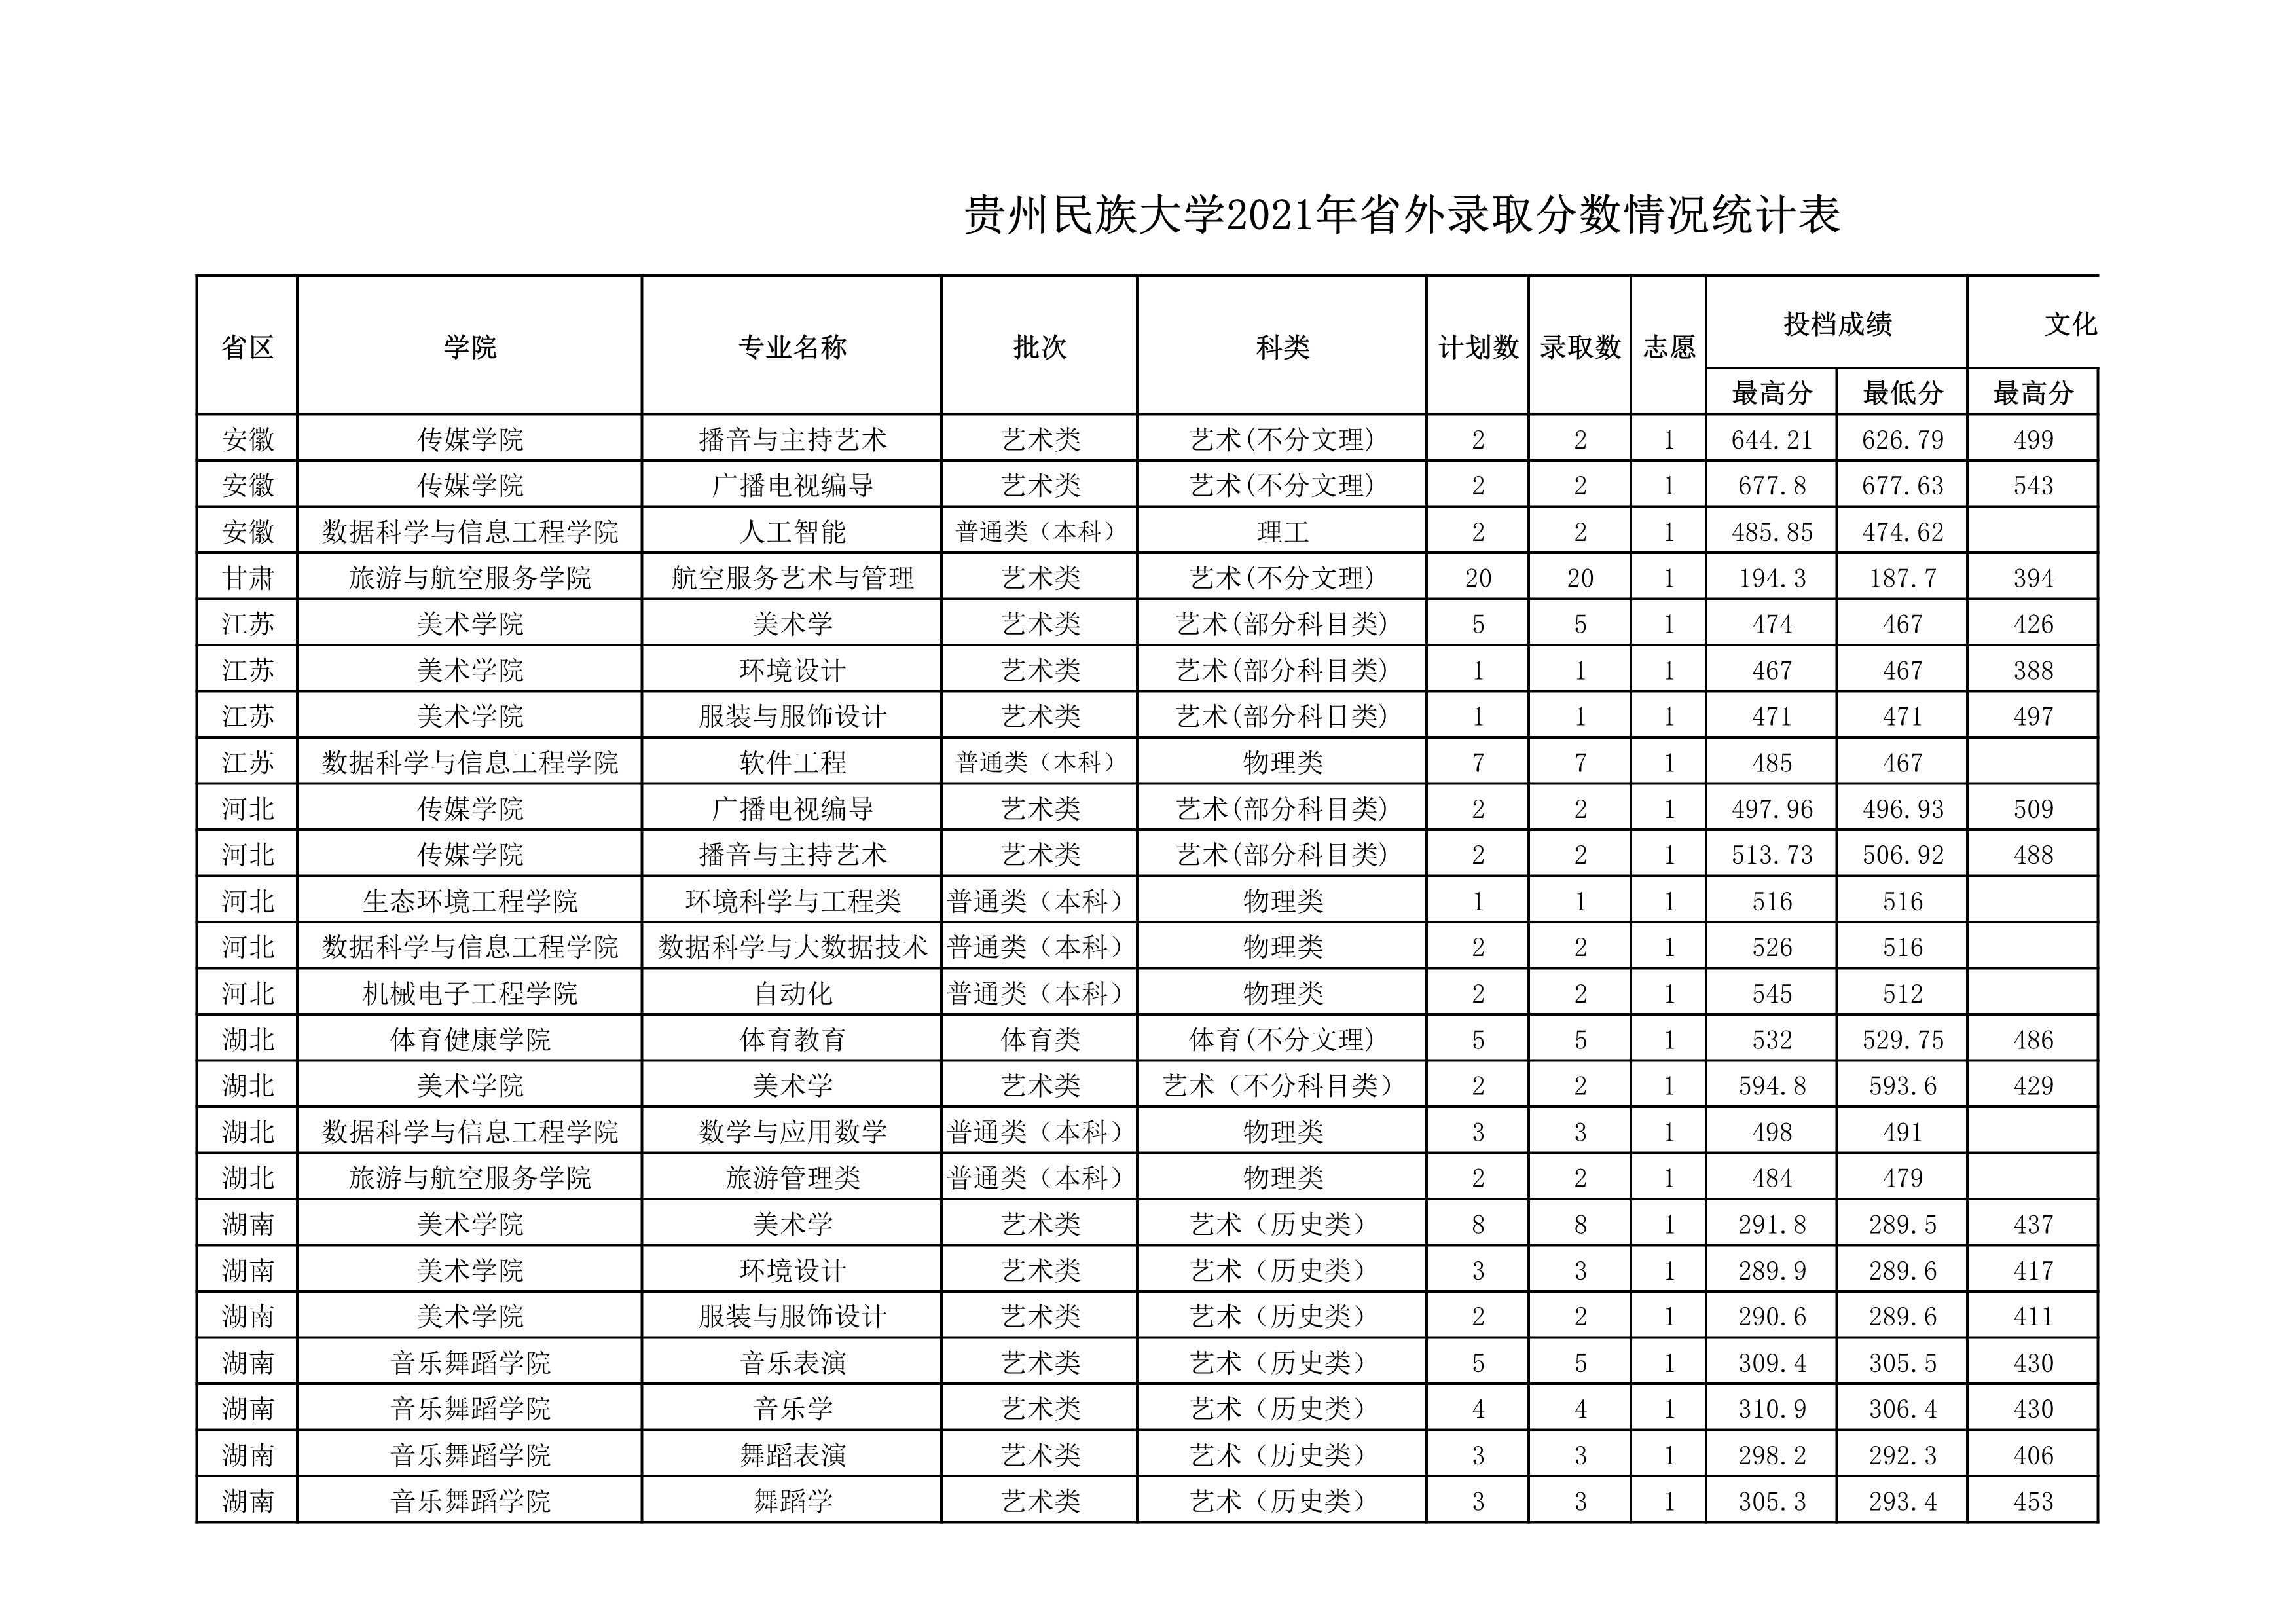 贵州民族大学2021年省外录取分数情况统计表_20220414154148_1.jpg